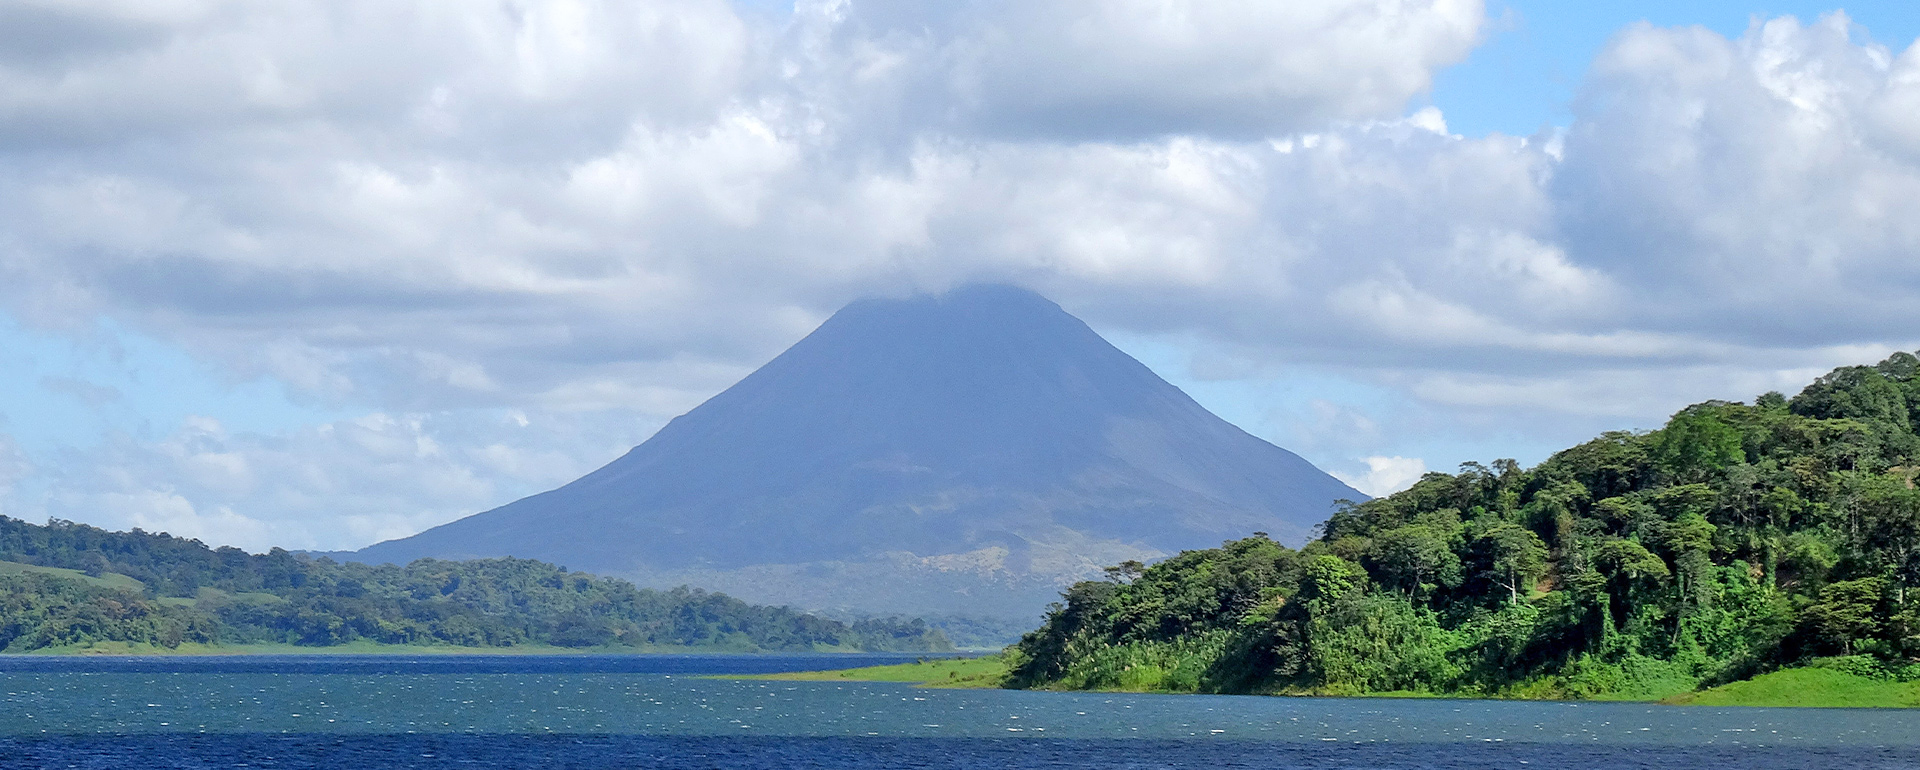 Costa Rica- Blick auf den Vulkan Arenal